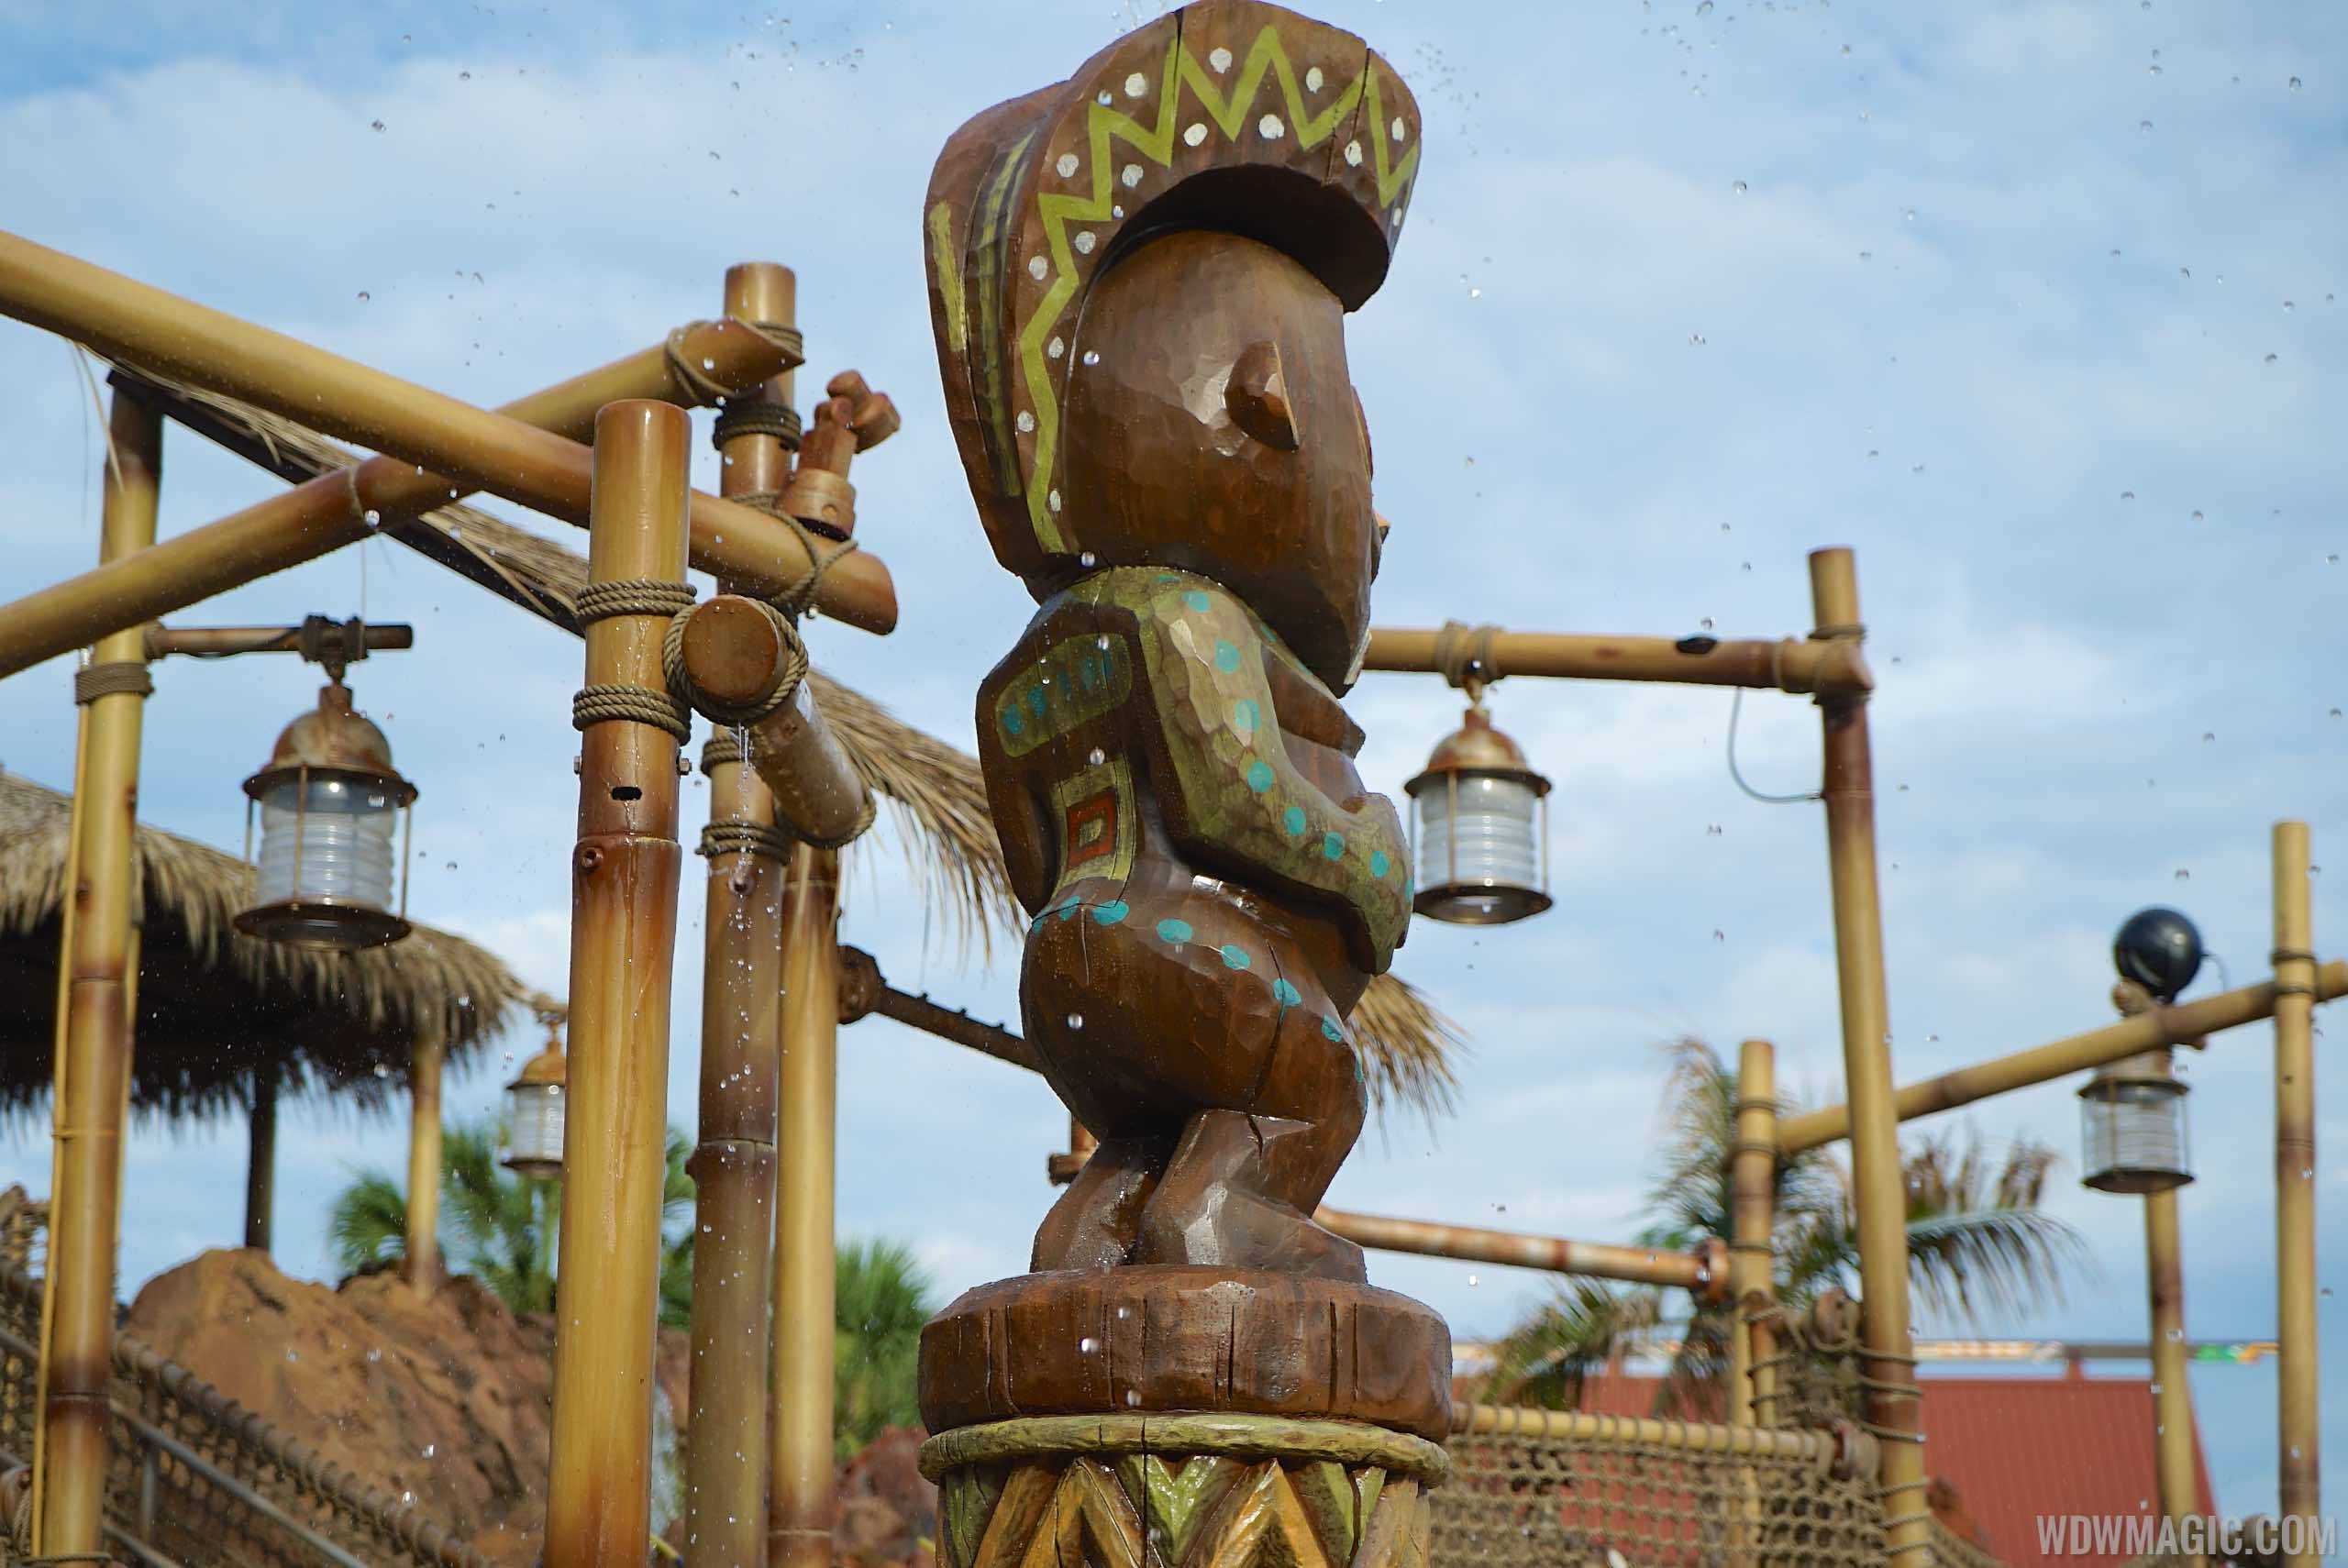 PHOTOS - Kiki Tikis Splash Play area now open at Disney's Polynesian Village Resort